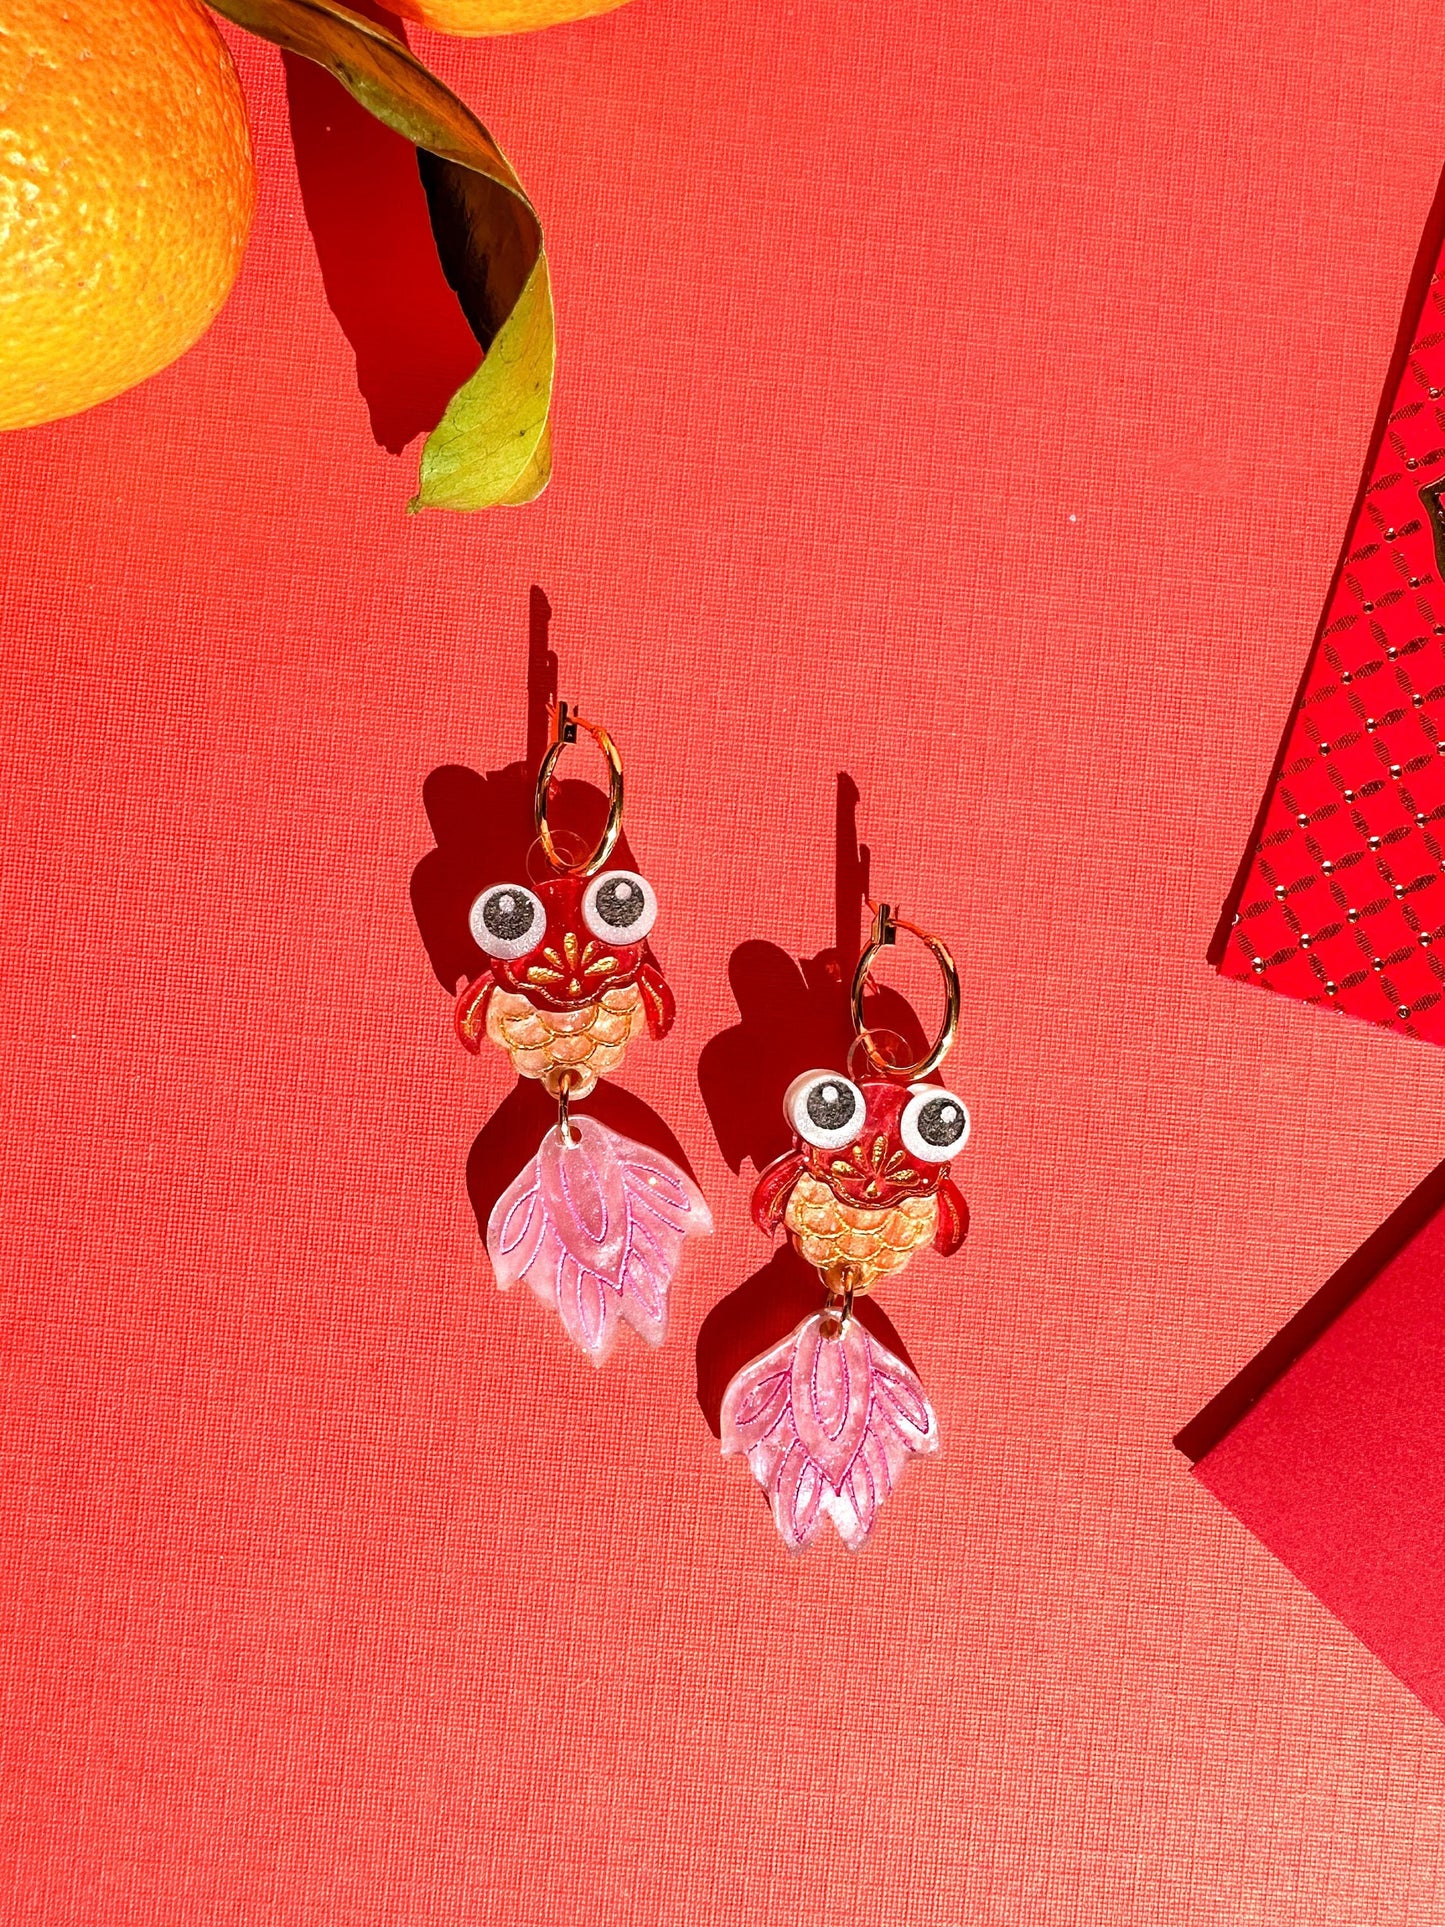 Goldfish Earrings//Statement Earring//Acrylics Earrings //Lunar New Year Earrings//Chinese New Year Earrings